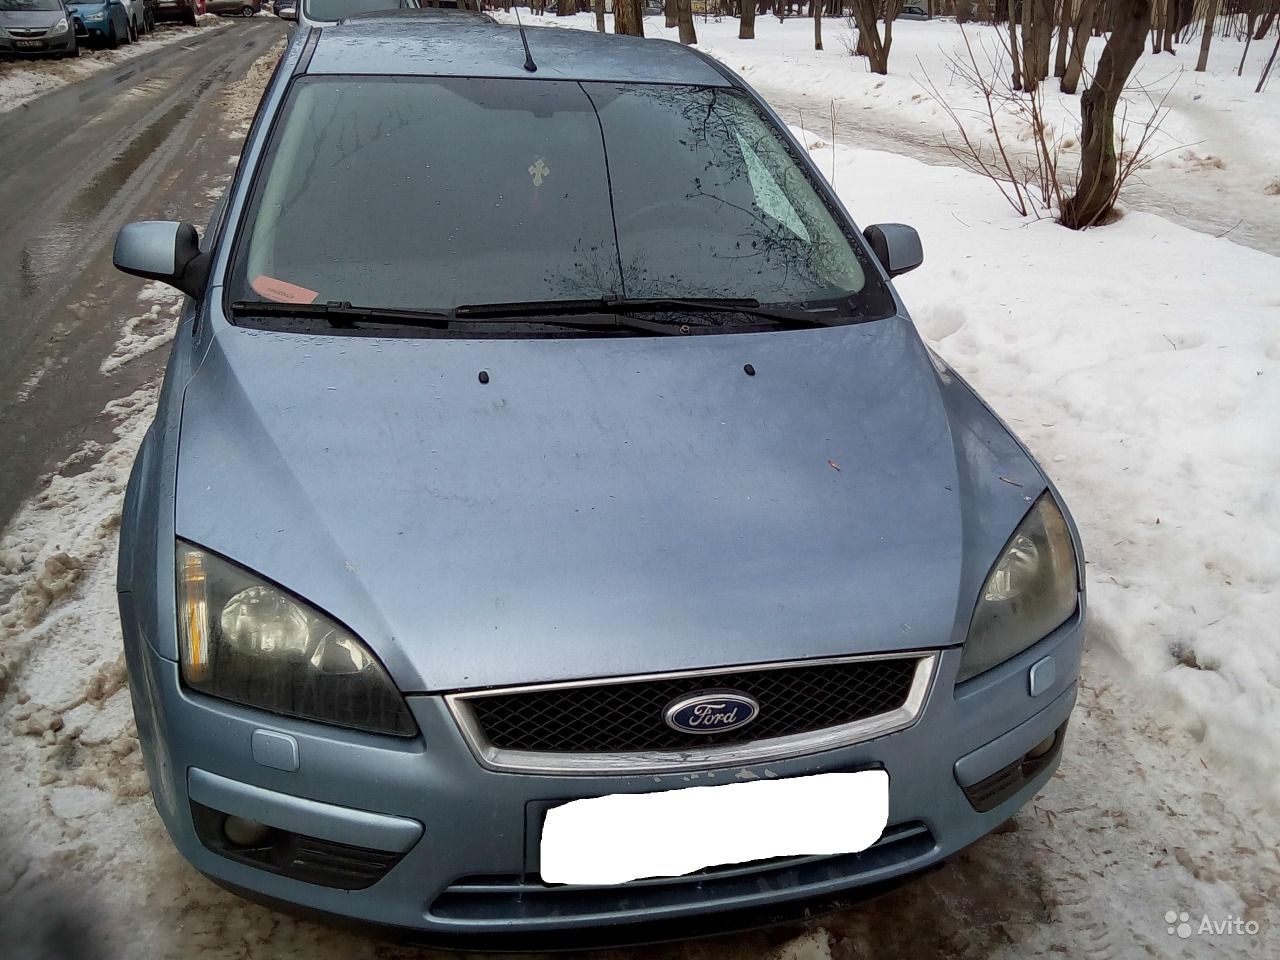 Купить ford f150 - avito.ru